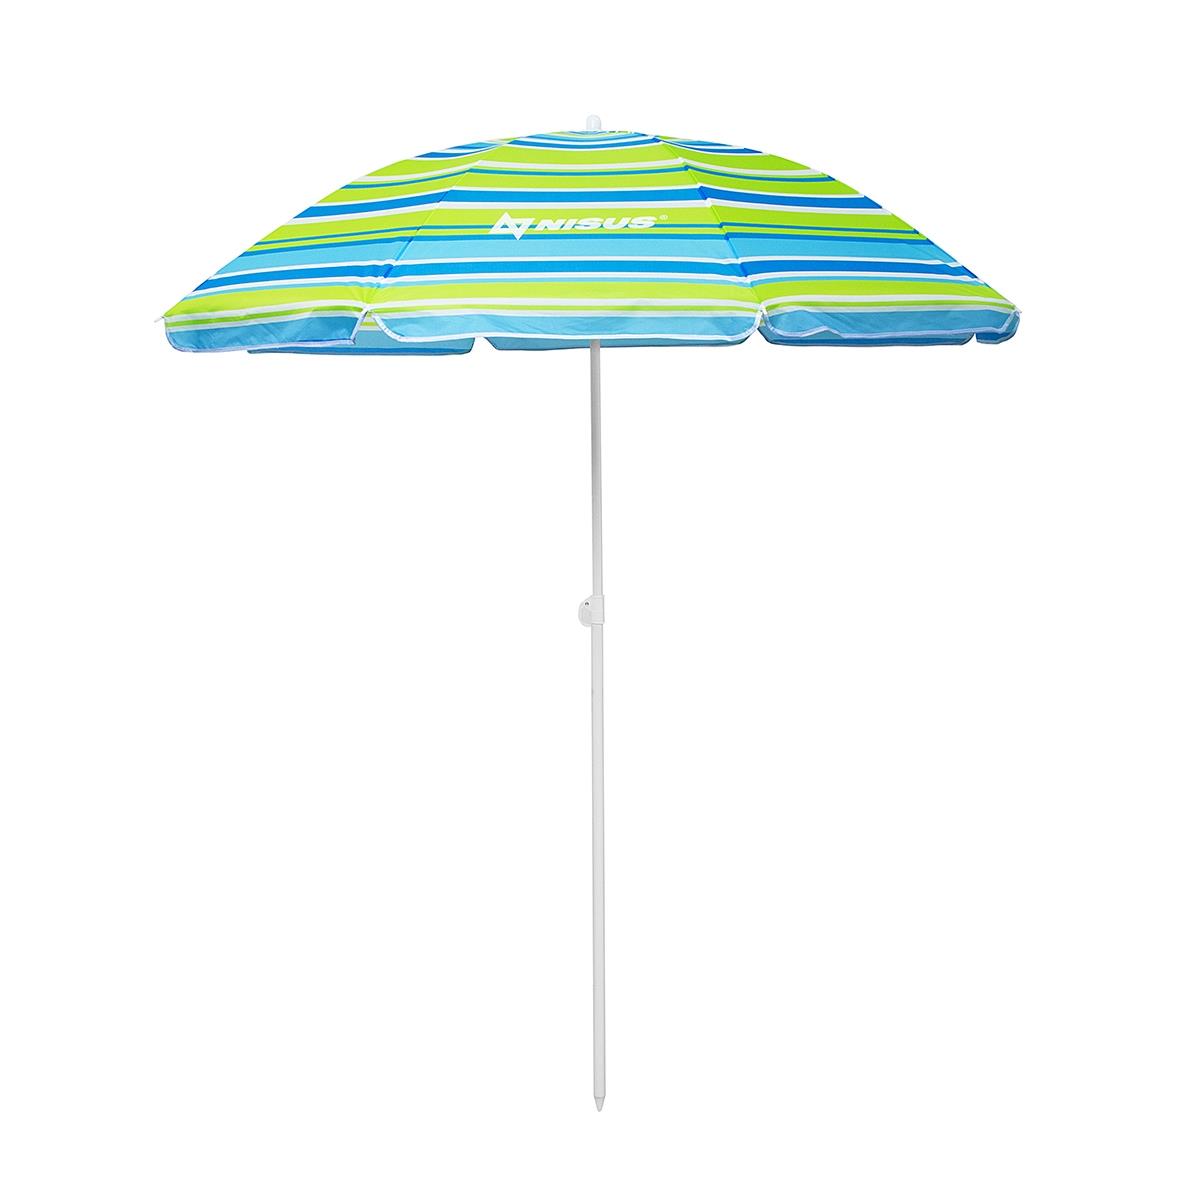 Зонт пляжный d 2,00м прямой (22/25/170Т) NA-200-SB  Nisus зонт пляжный d 1 8м с наклоном арбуз 19 22 170т na bu1907 180 w nisus